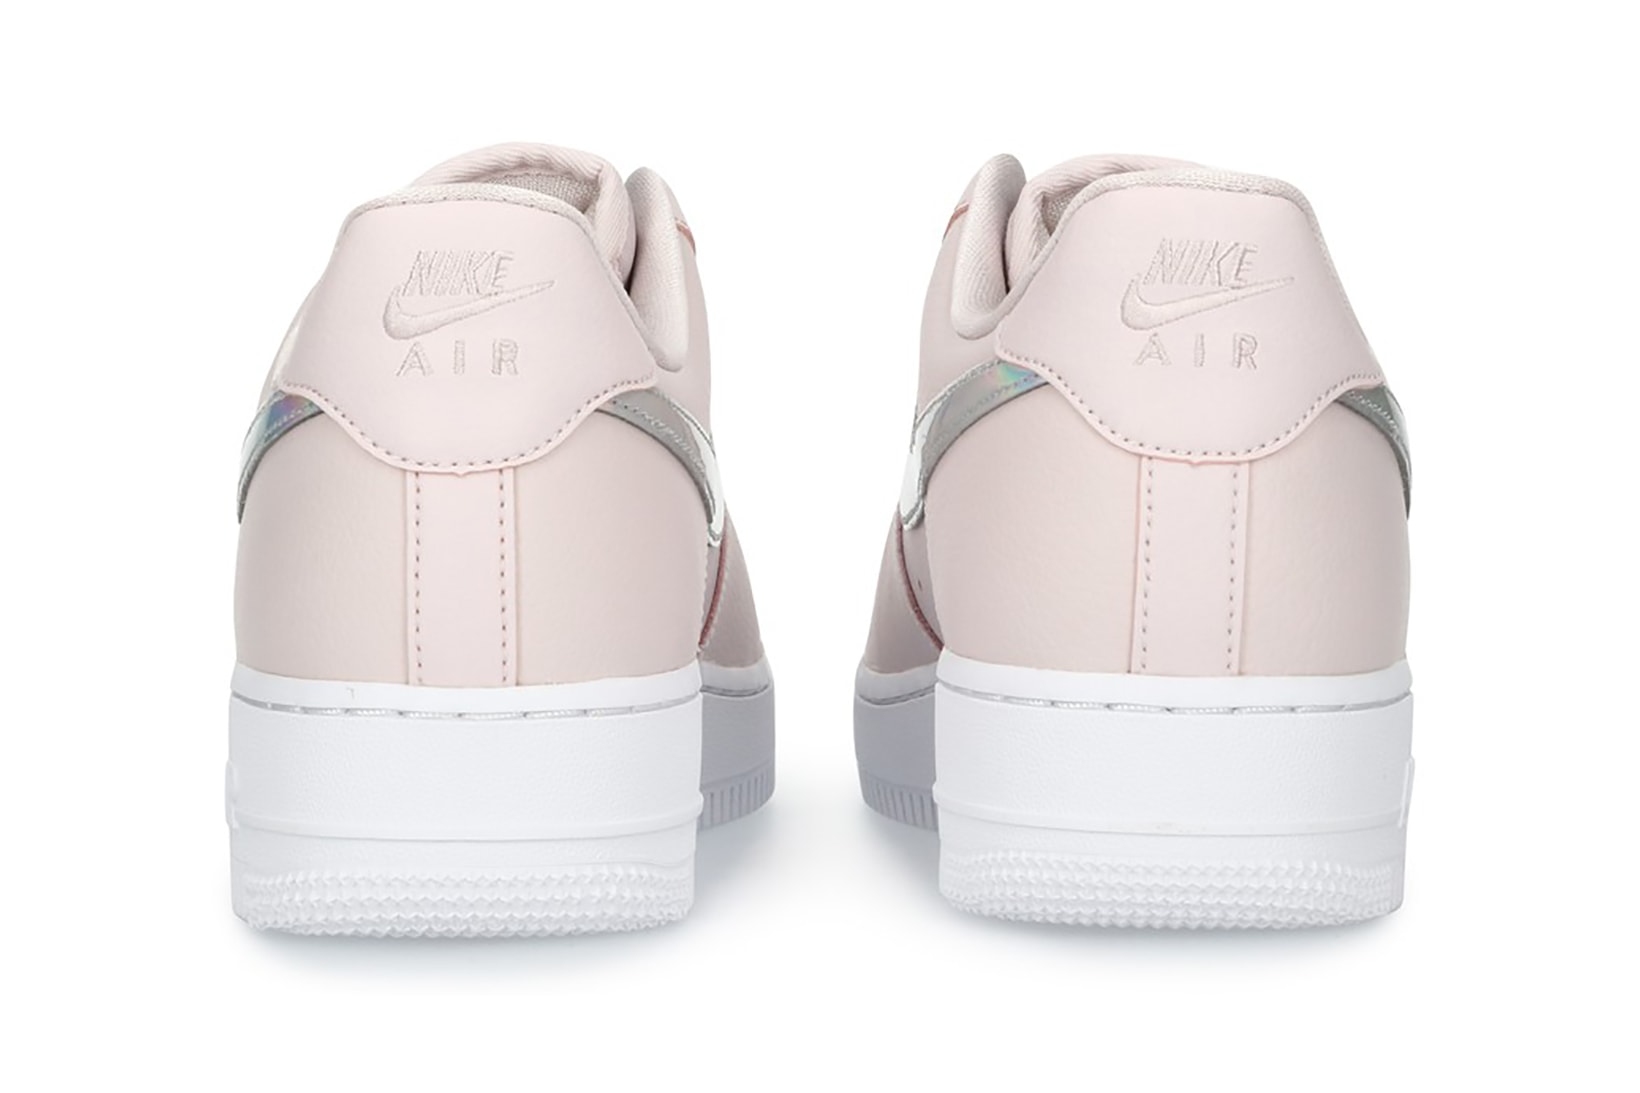 nike air force 1 07 womens sneakers pastel pink silver metallic colorway barely rose sneakerhead footwear shoes